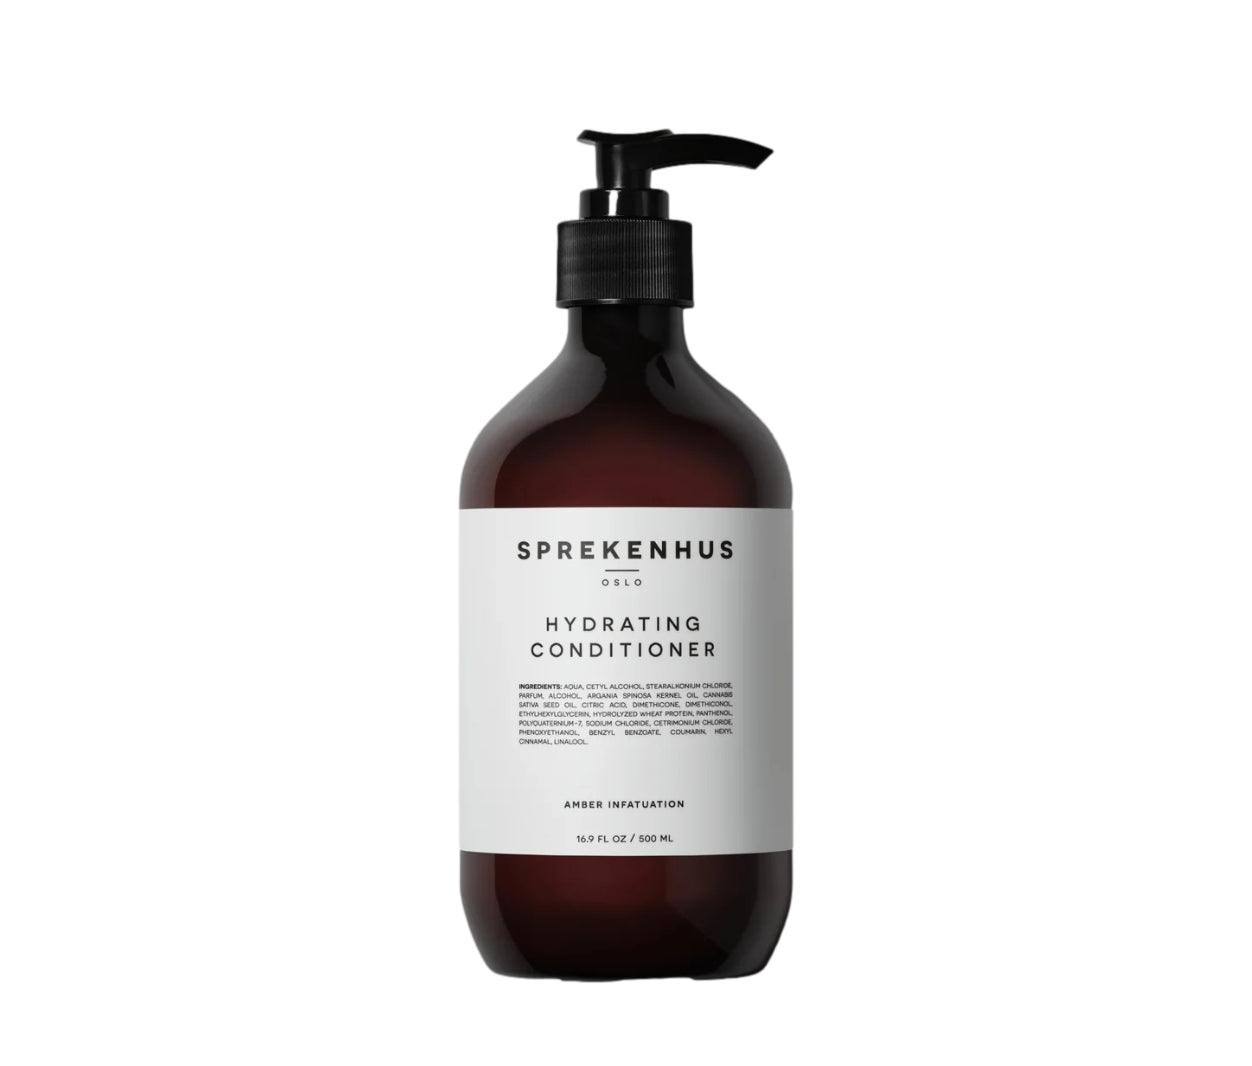 Sprekenhus Hydrating Conditioner 500ml - Amber Infatution Shampoo Gjennomsiktig - modostore.no